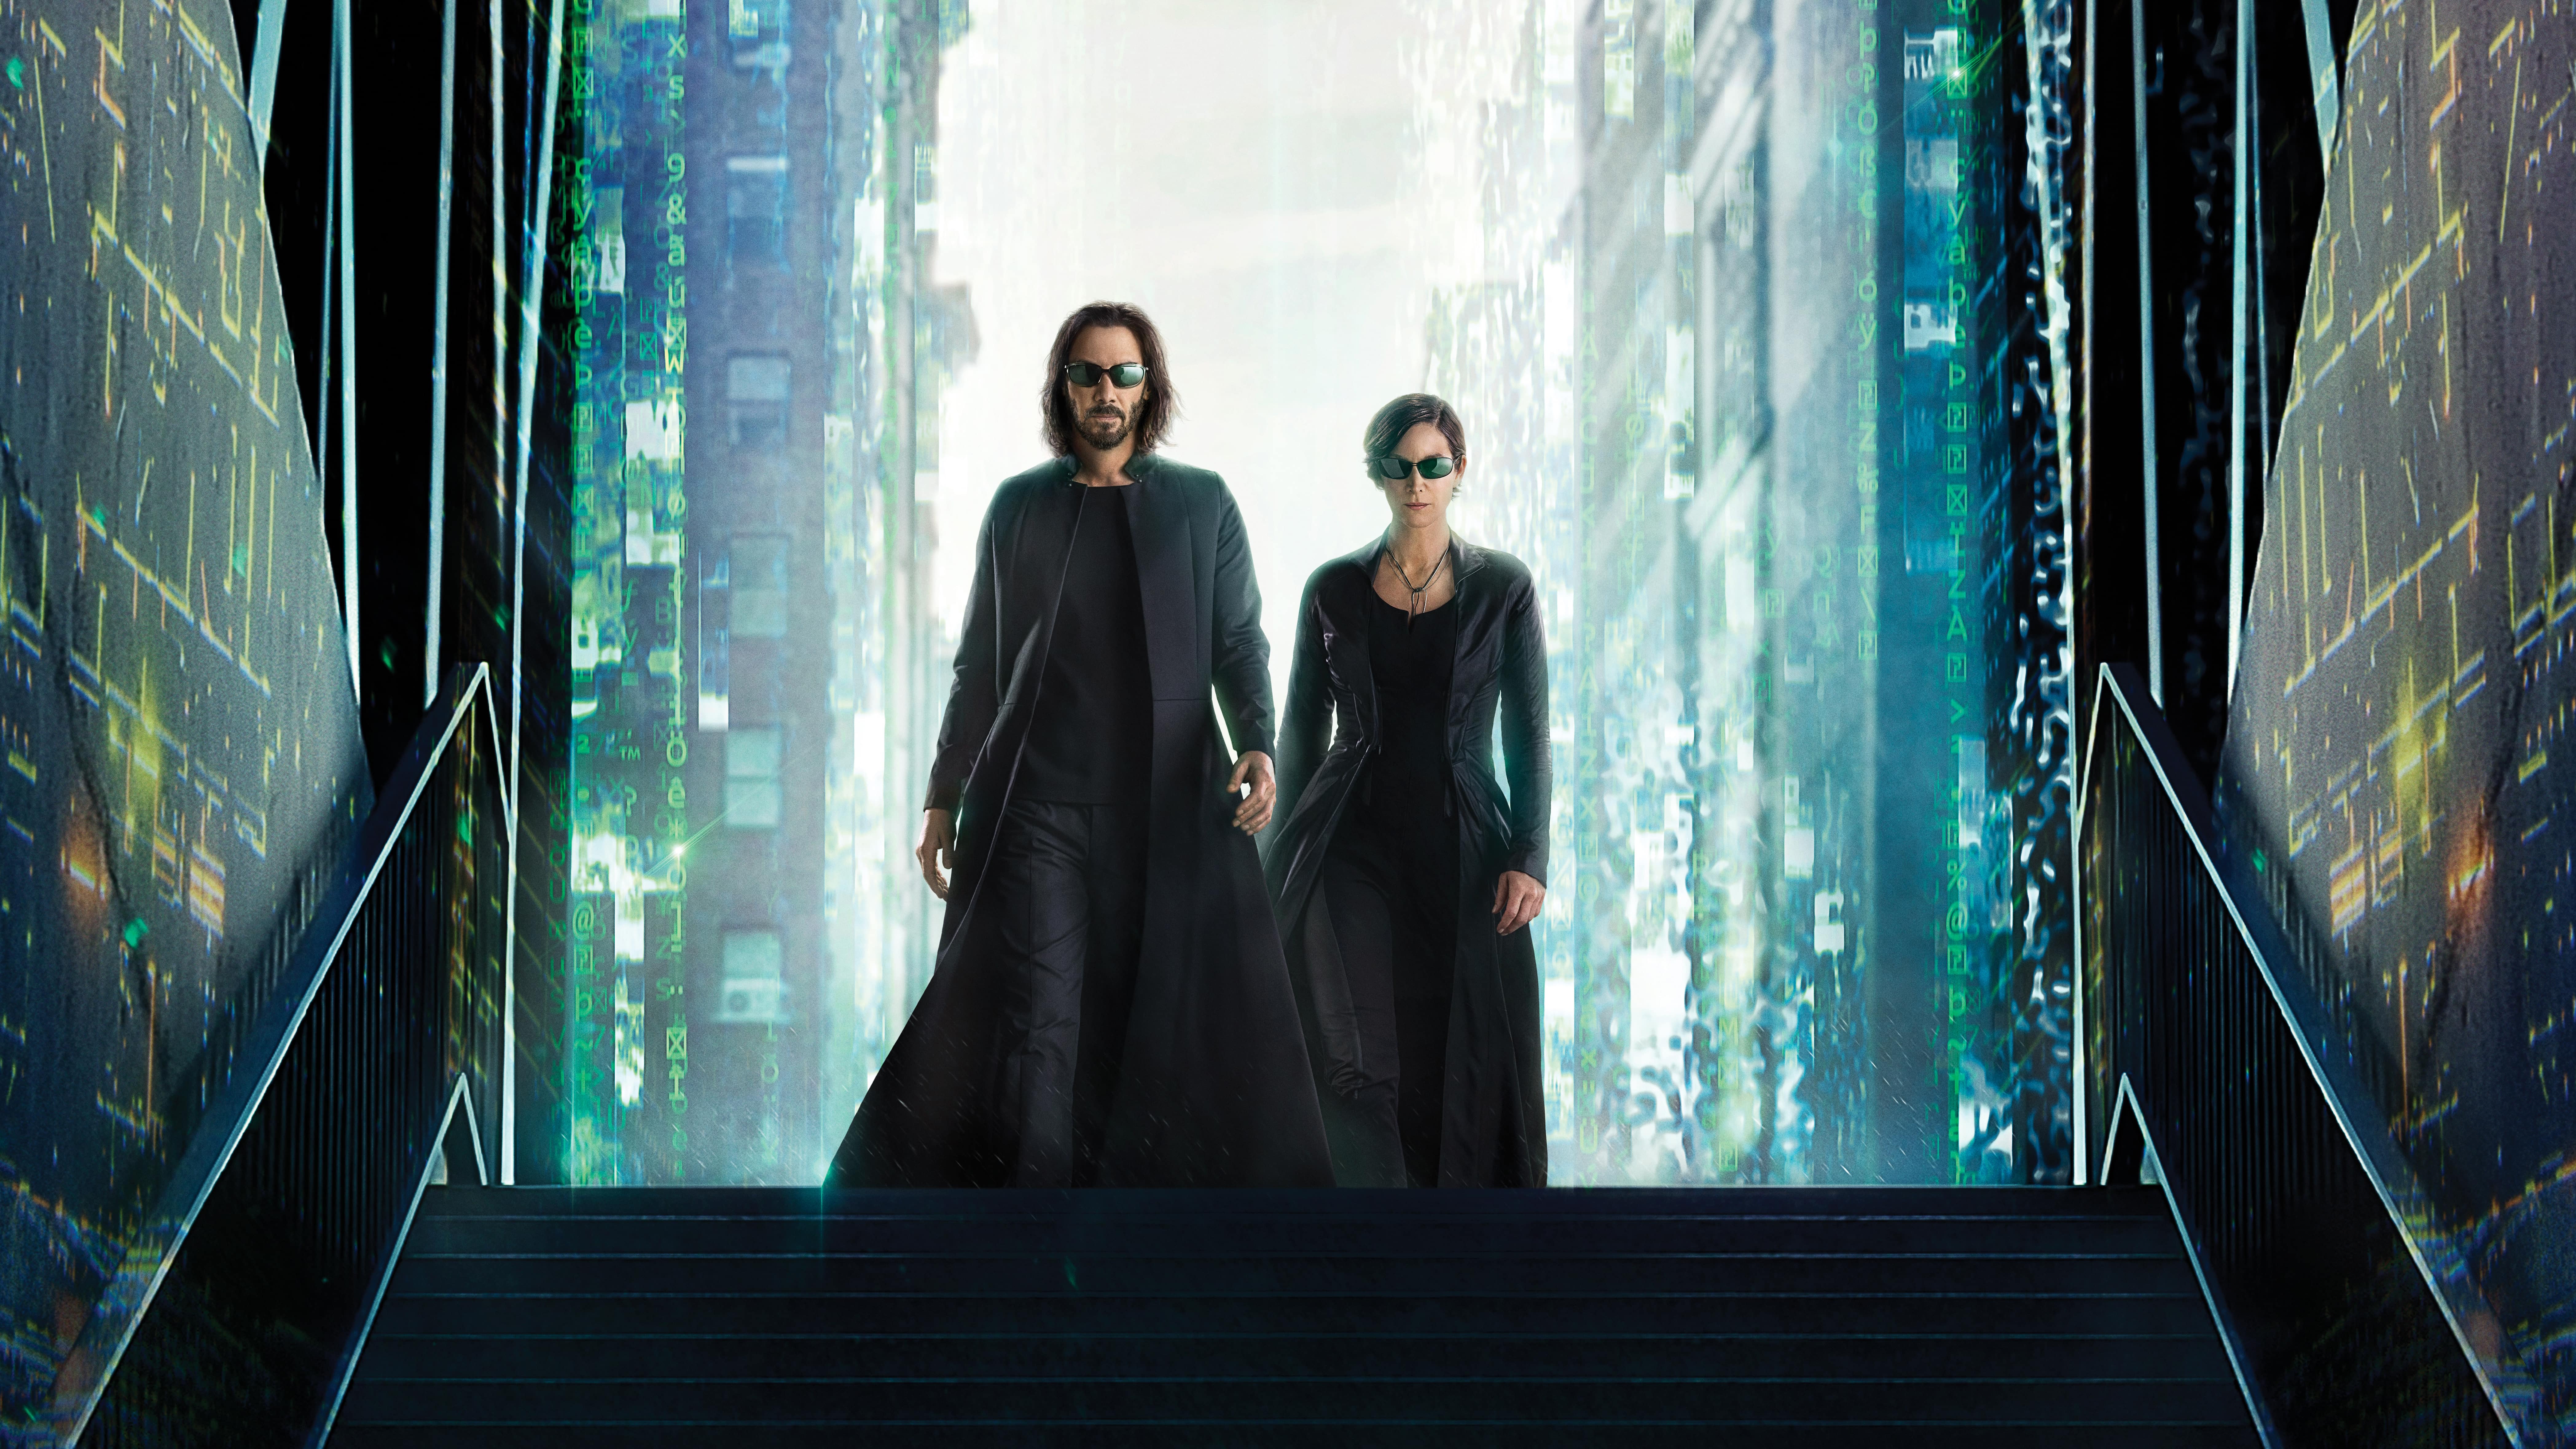 Wallpaper The Matrix 4